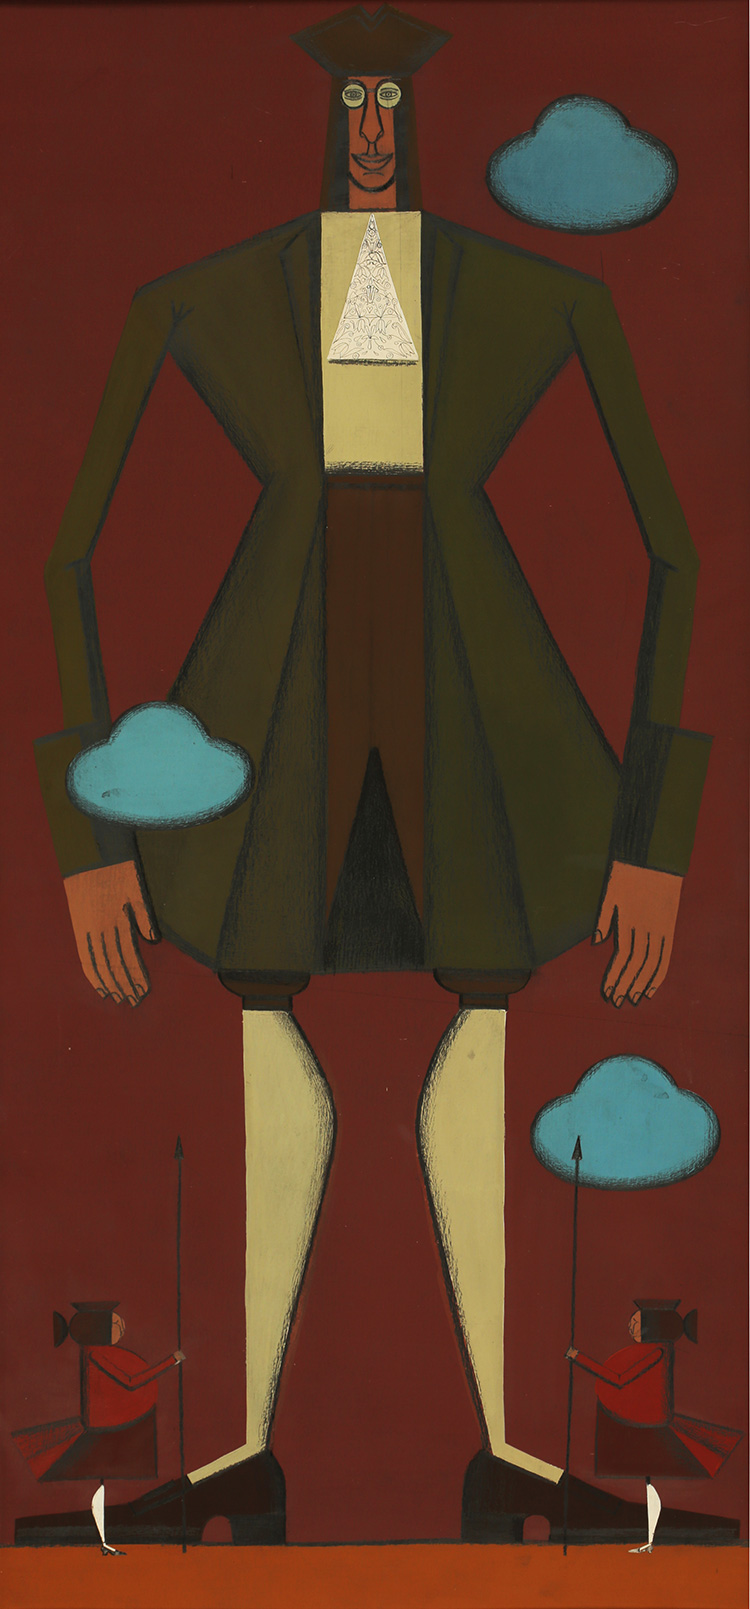 Нина ГУРЬЕВА - Приключения Гулливера 1. 2010, картон, темпера, акварельный и графитный карандаш, 80х37